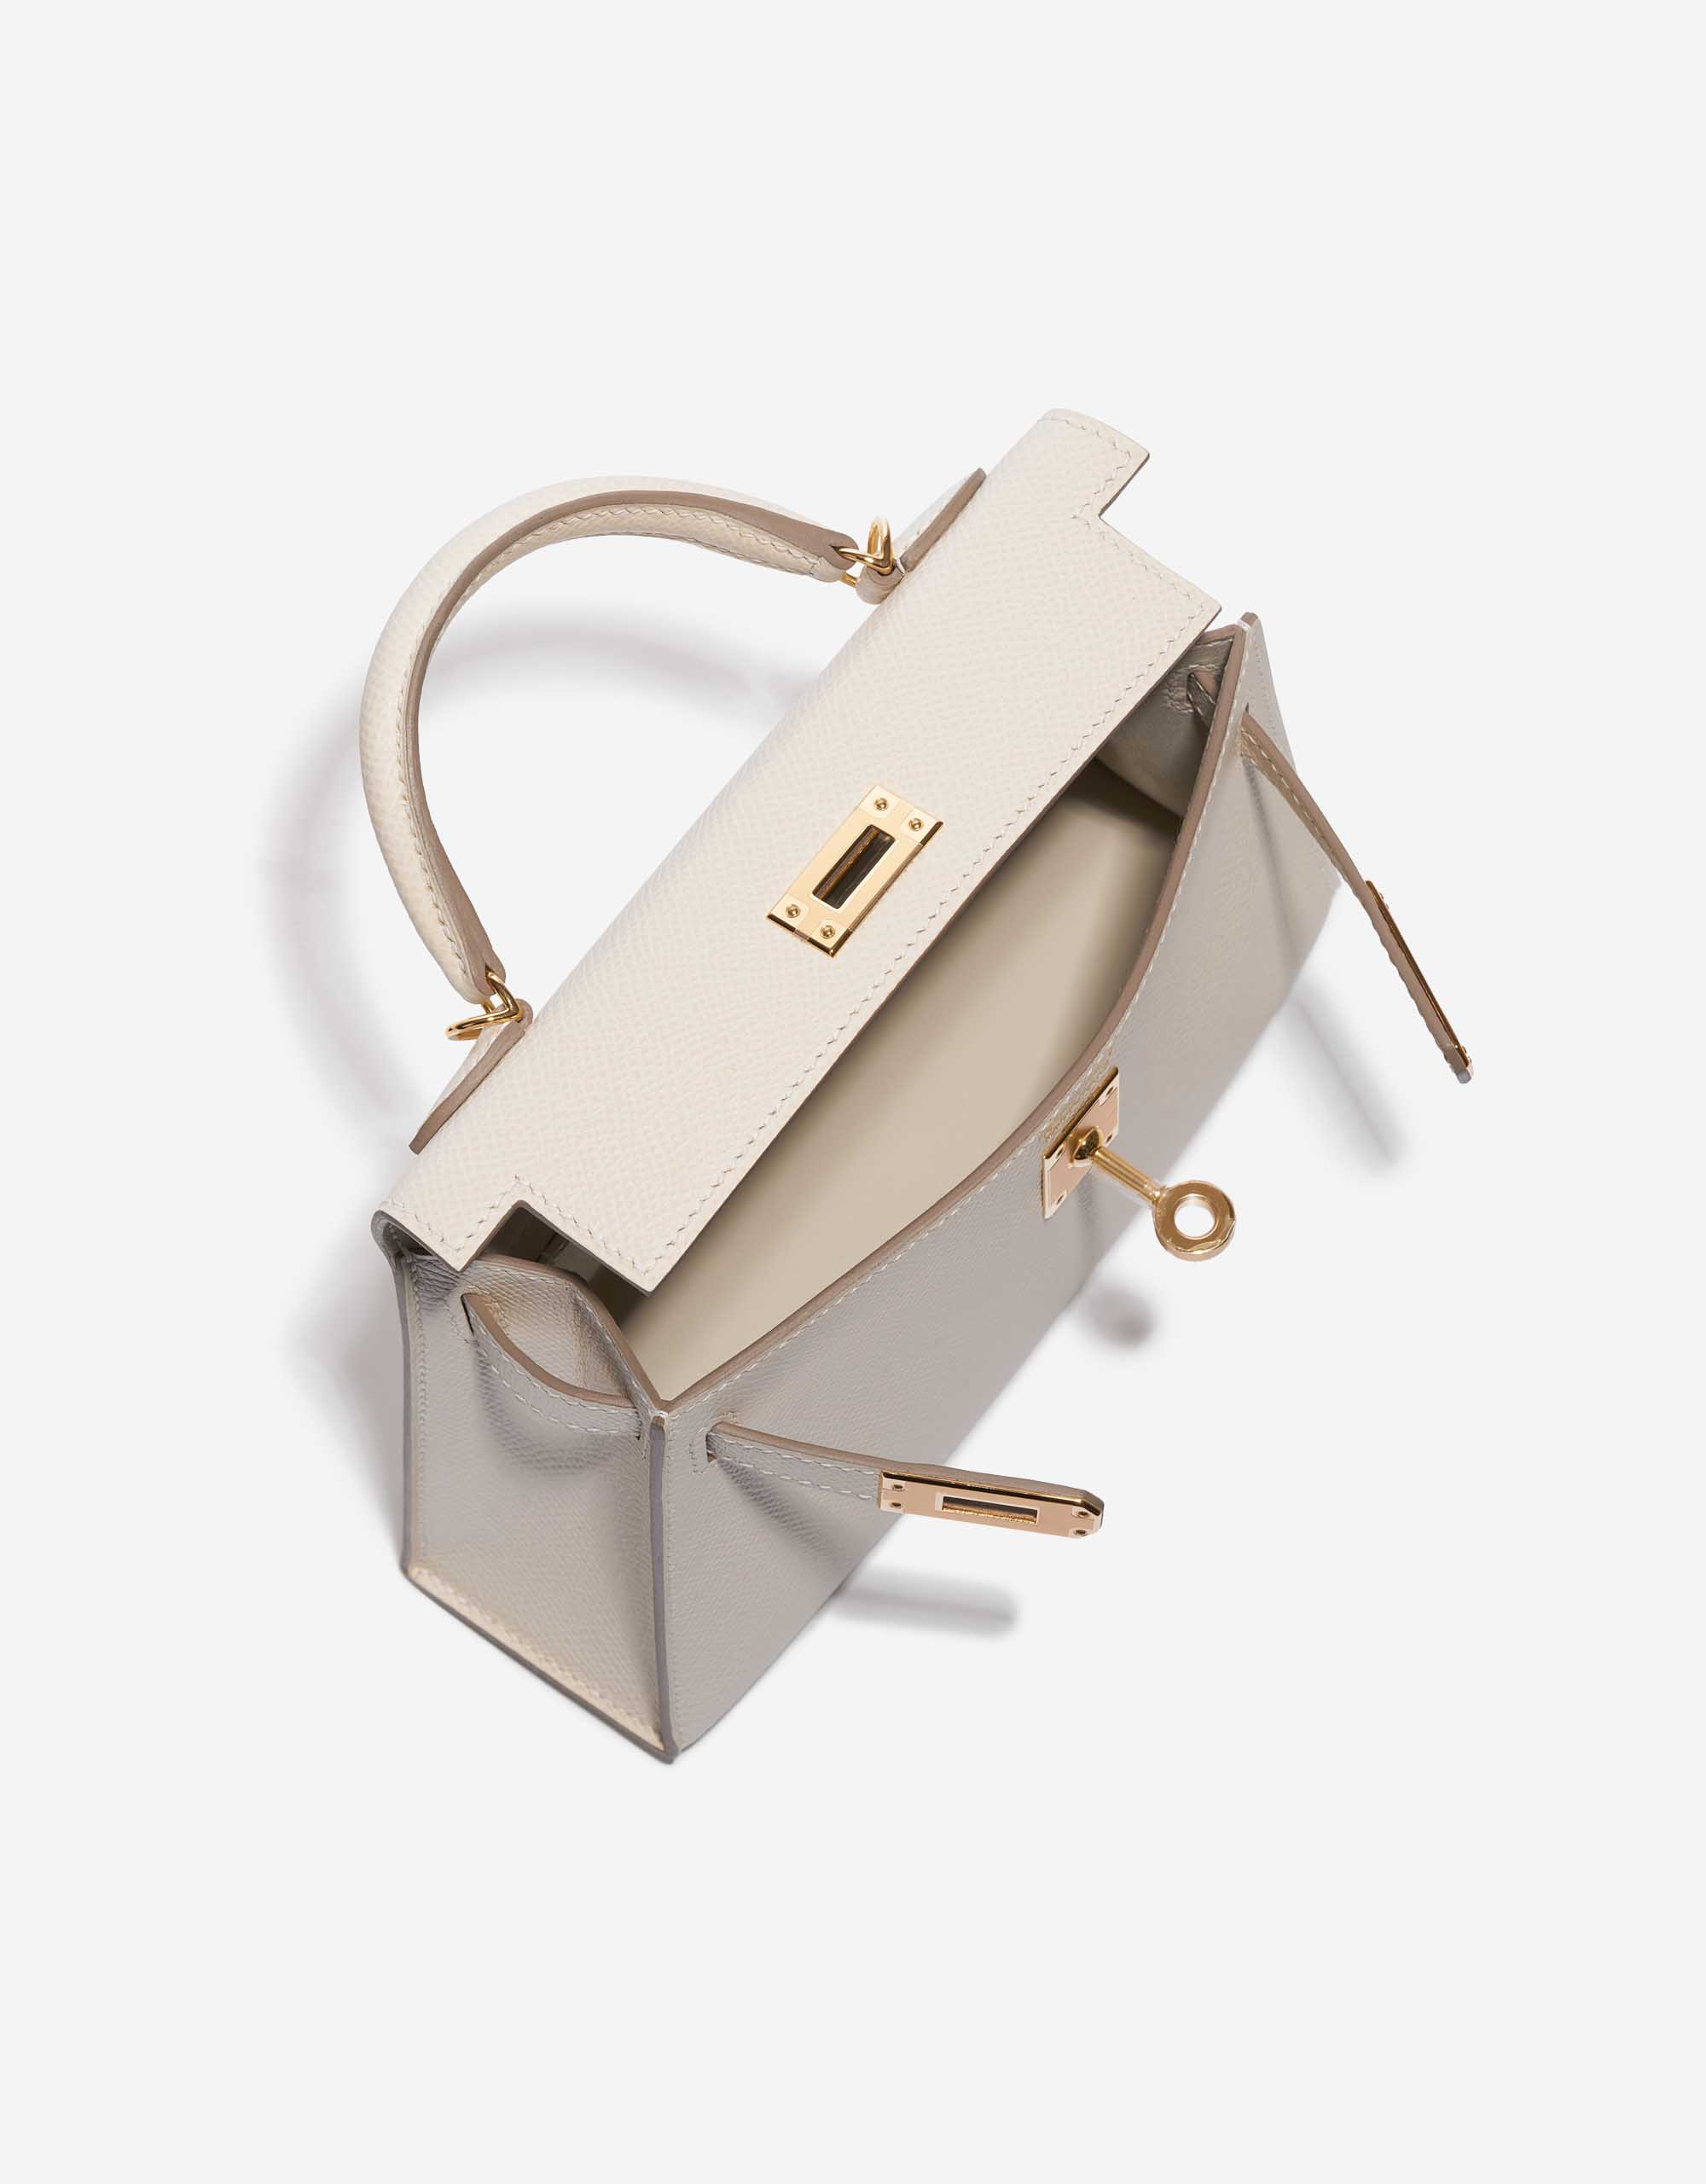 Pre-owned Hermès Tasche Kelly Mini Epsom Craie White Inside | Verkaufen Sie Ihre Designer-Tasche auf Saclab.com